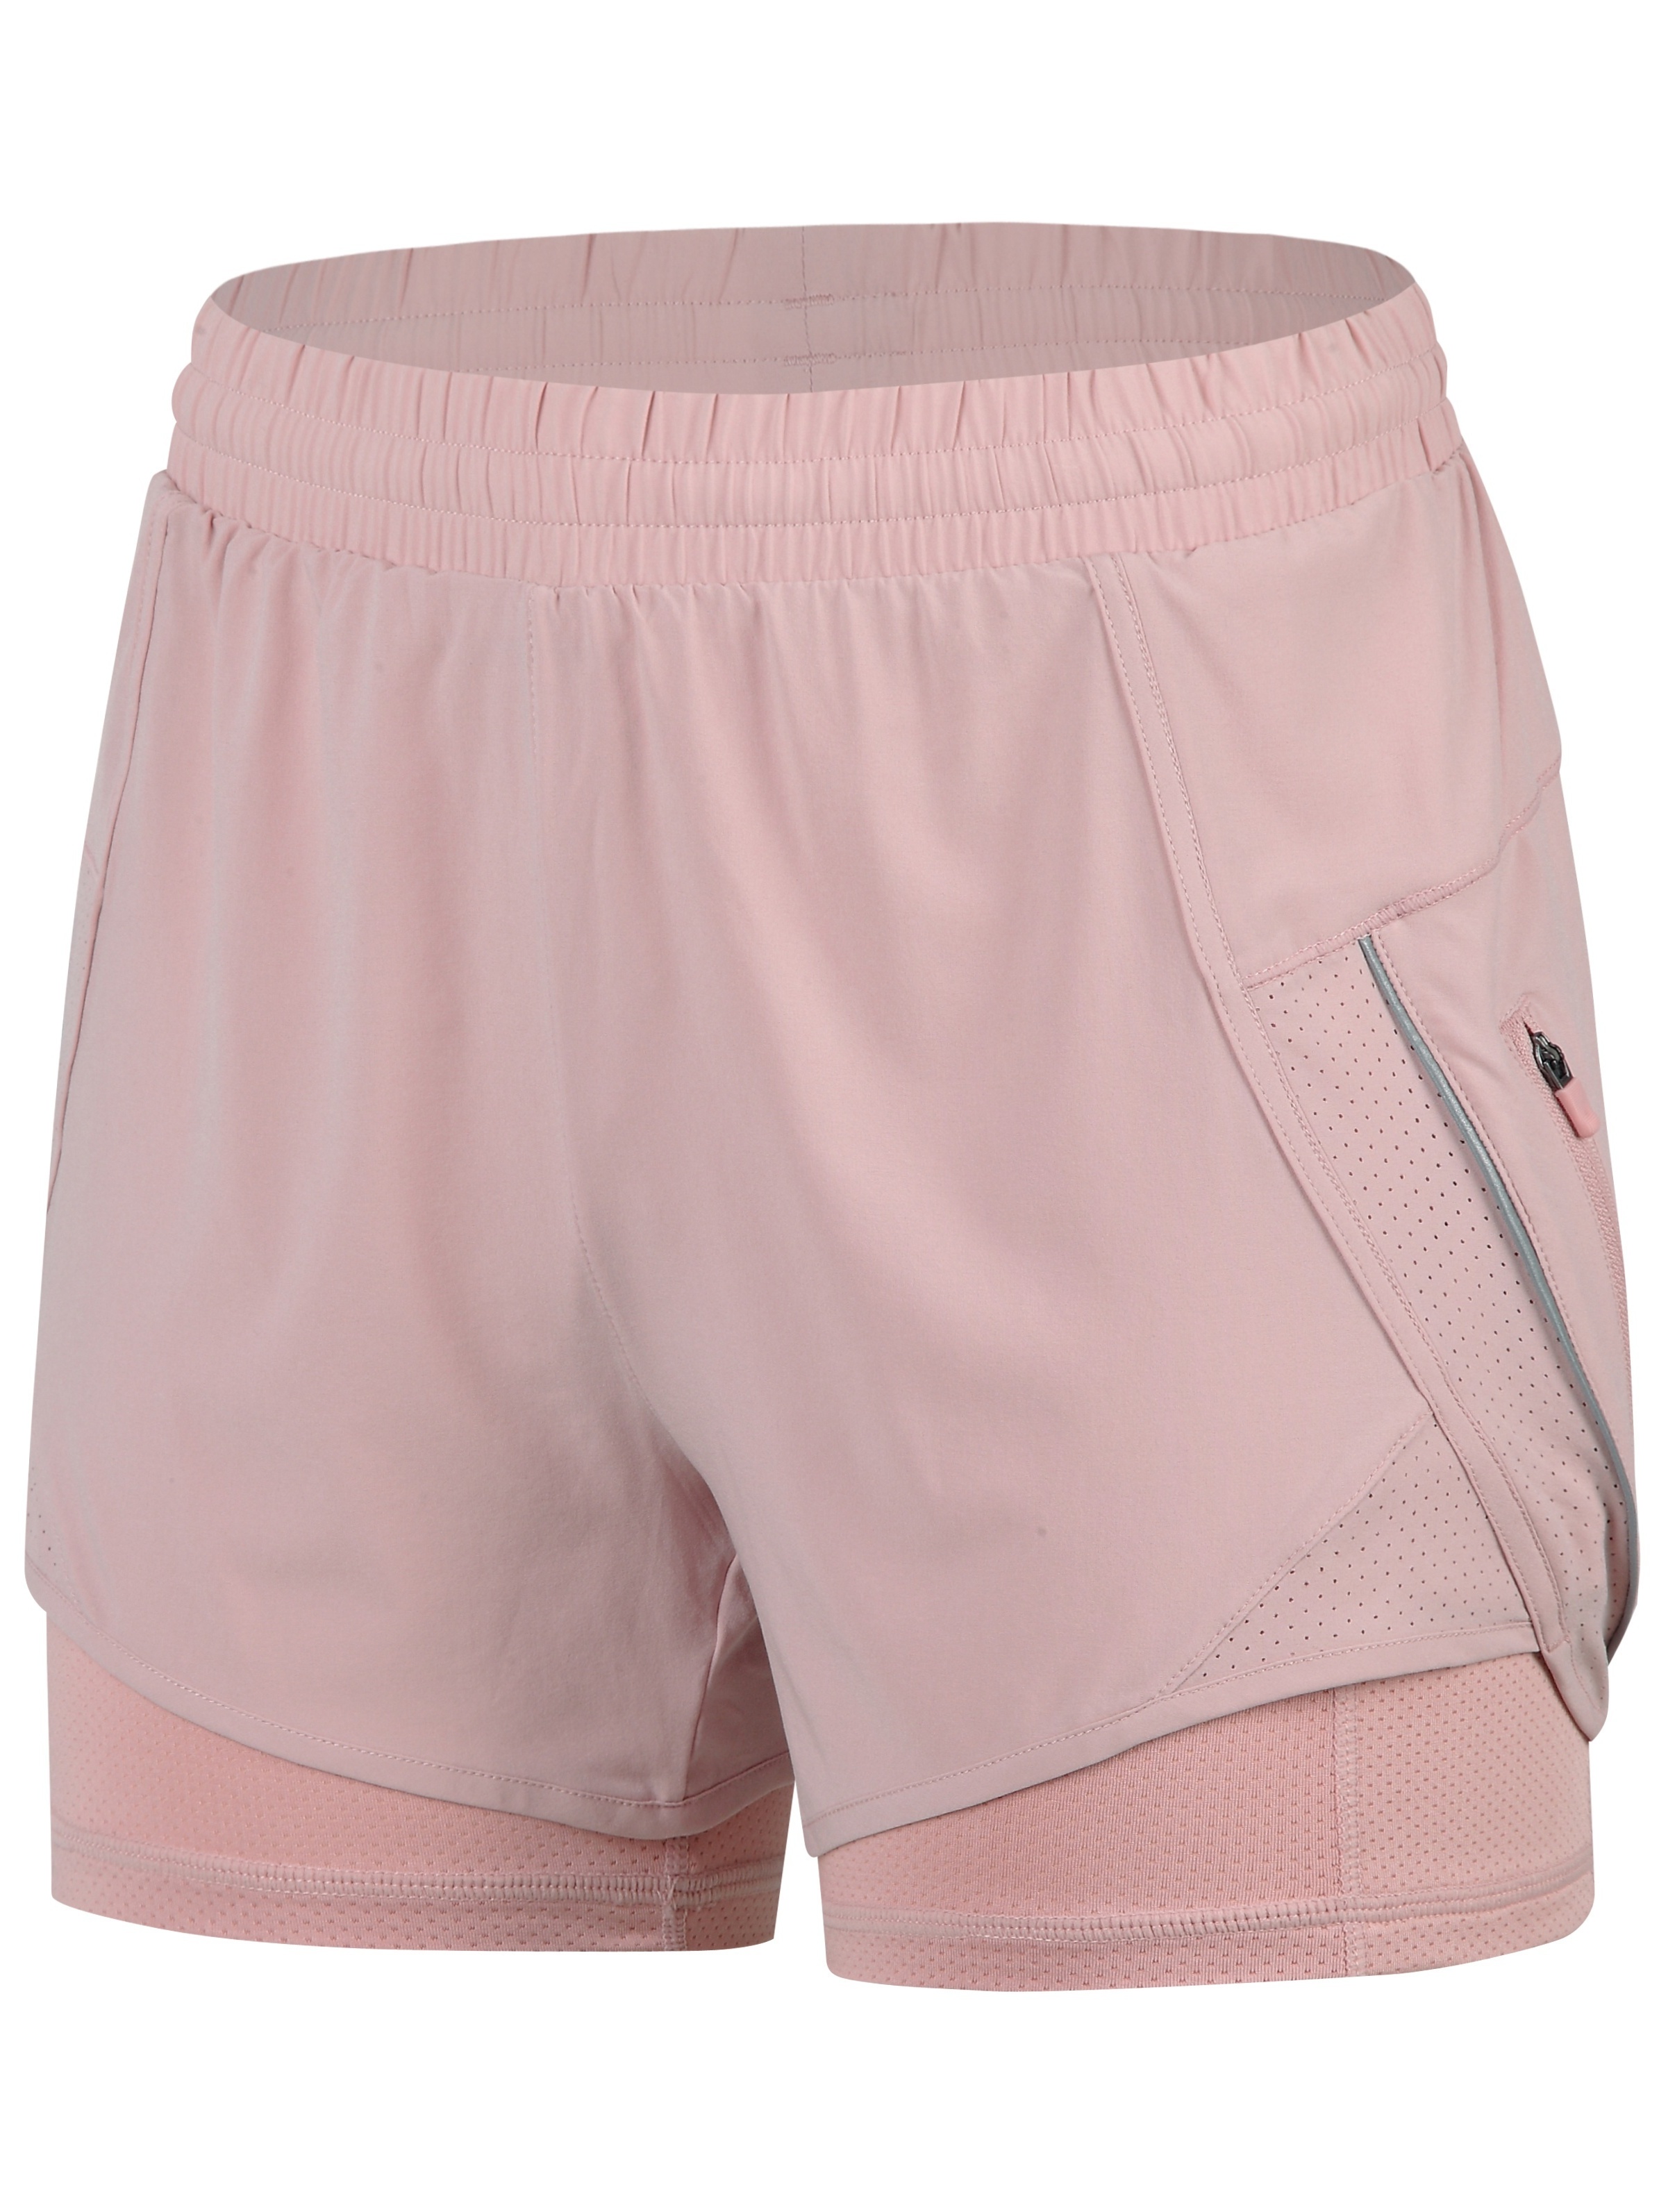 Pantalones deportivos para mujer, para correr, ejercicio, deporte,  gimnasio, caminar, color rosa, talla L